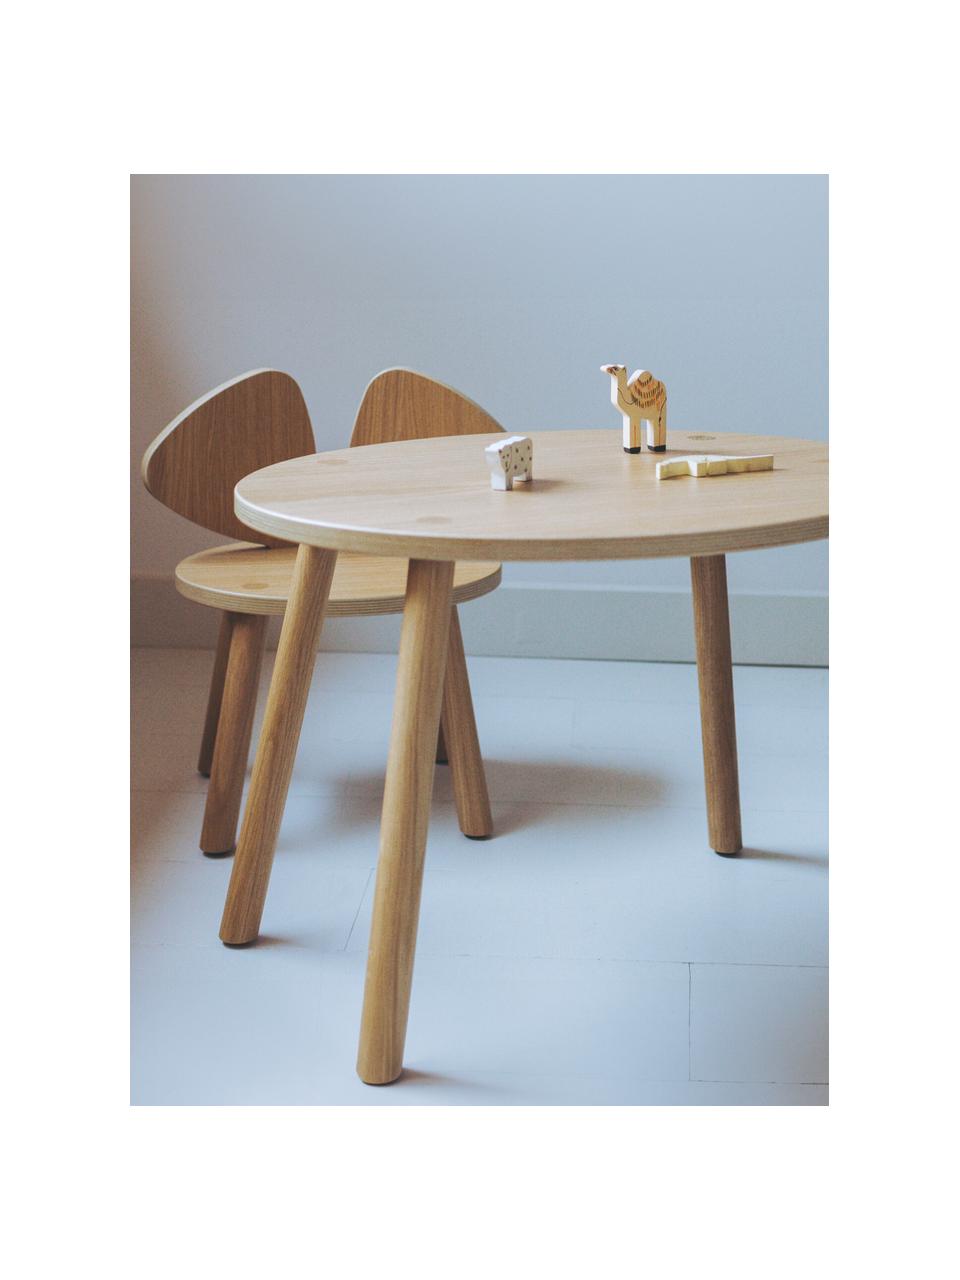 Ovaler Holz-Kindertisch Mouse, Eichenholzfurnier, lackiert

Dieses Produkt wird aus nachhaltig gewonnenem, FSC®-zertifiziertem Holz gefertigt., Eichenholz, B 60 x T 46 cm